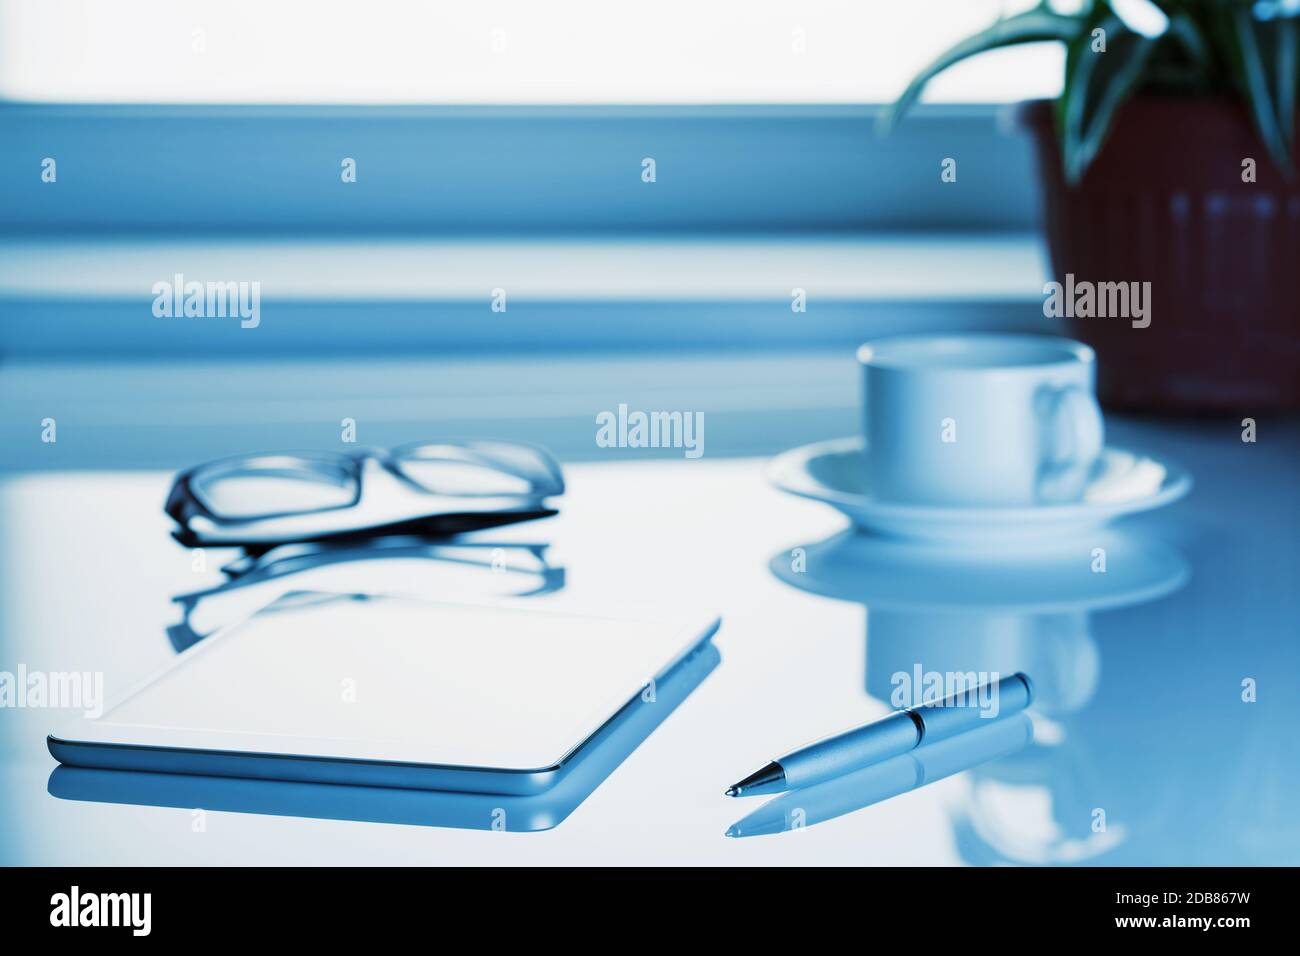 Tablet-Computer, Brille und eine Tasse auf dem Tisch in einem blauen getönt. Entfernte Logos, Tasten, ändern Sie die ursprüngliche Größe. Stockfoto